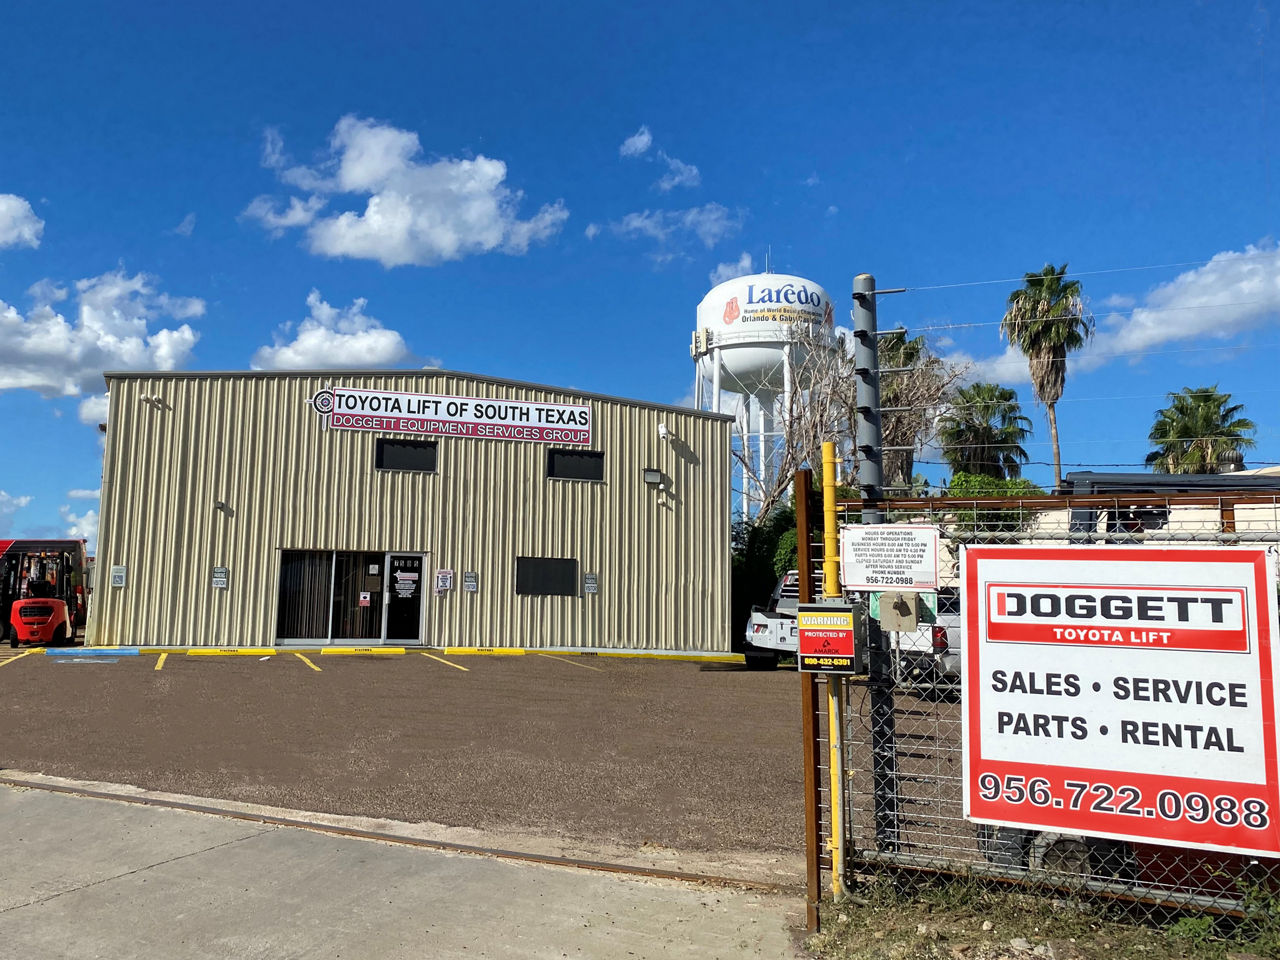 Doggett Toyota Lift : Succursale de Laredo